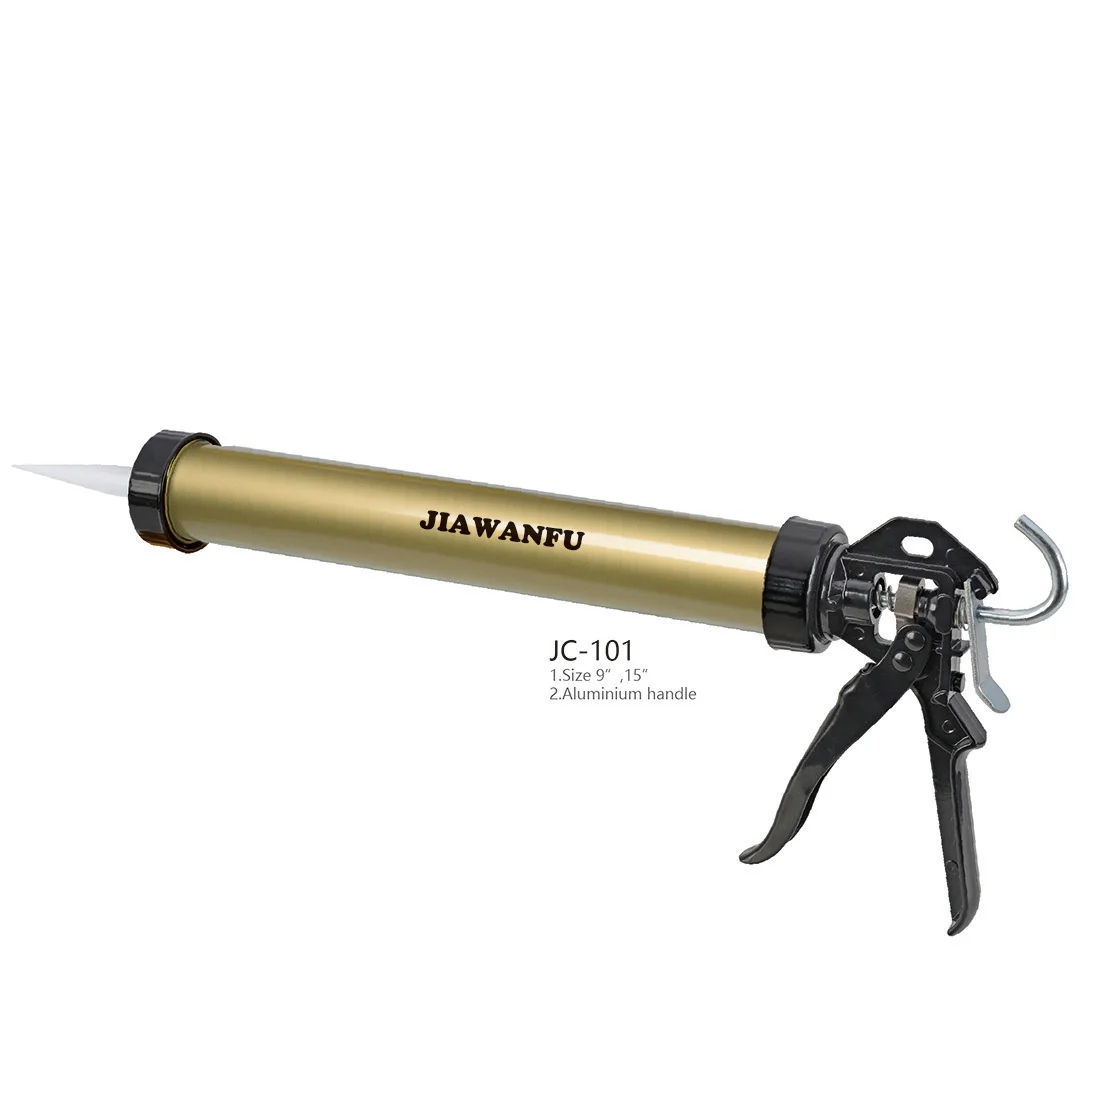 JC-106 силиконовый герметик цилиндр велосипедные пистолет шприц для заделки швов